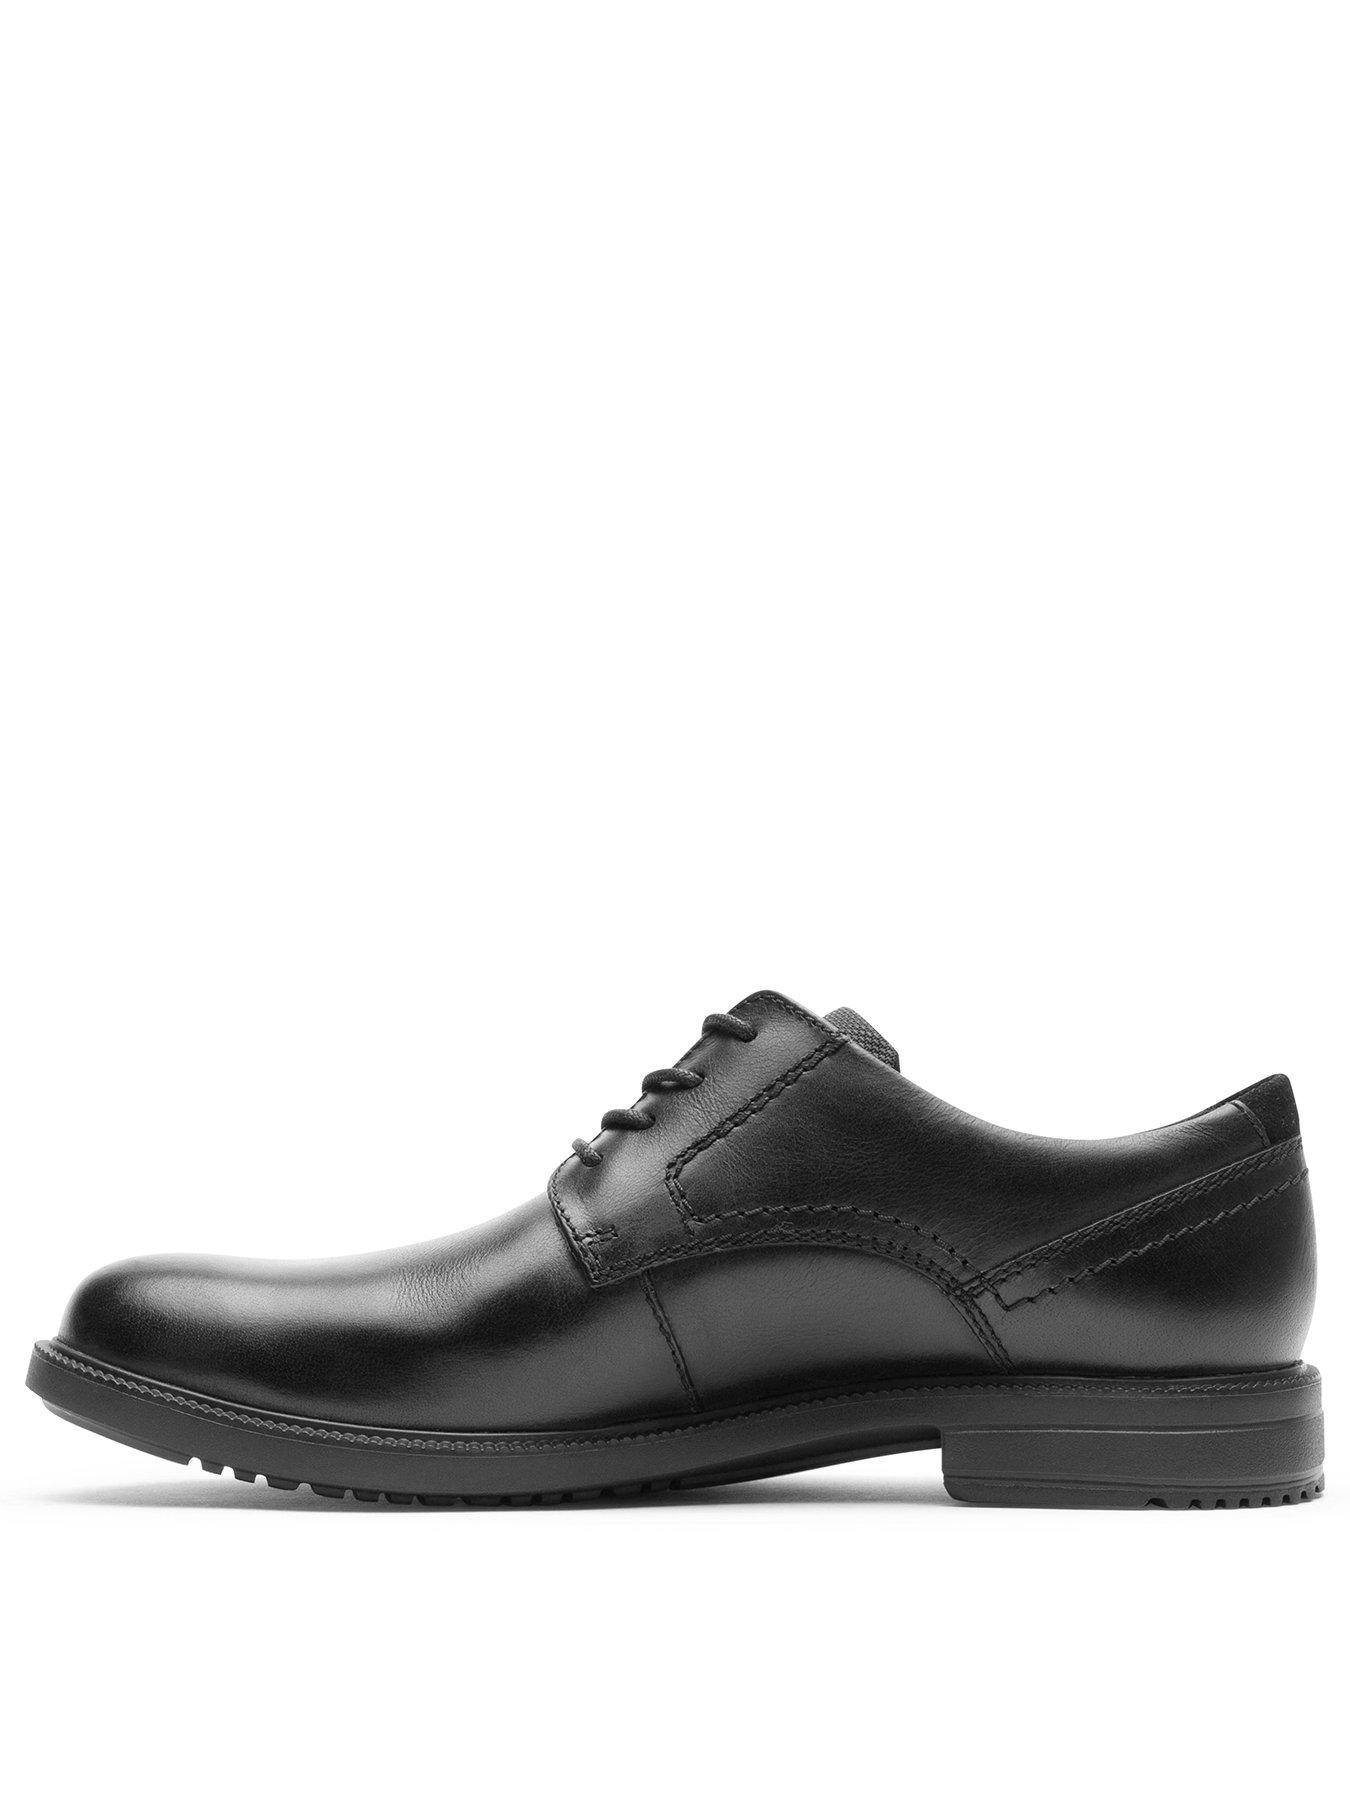 Rockport Berenger Oxford Shoes - Black | littlewoods.com